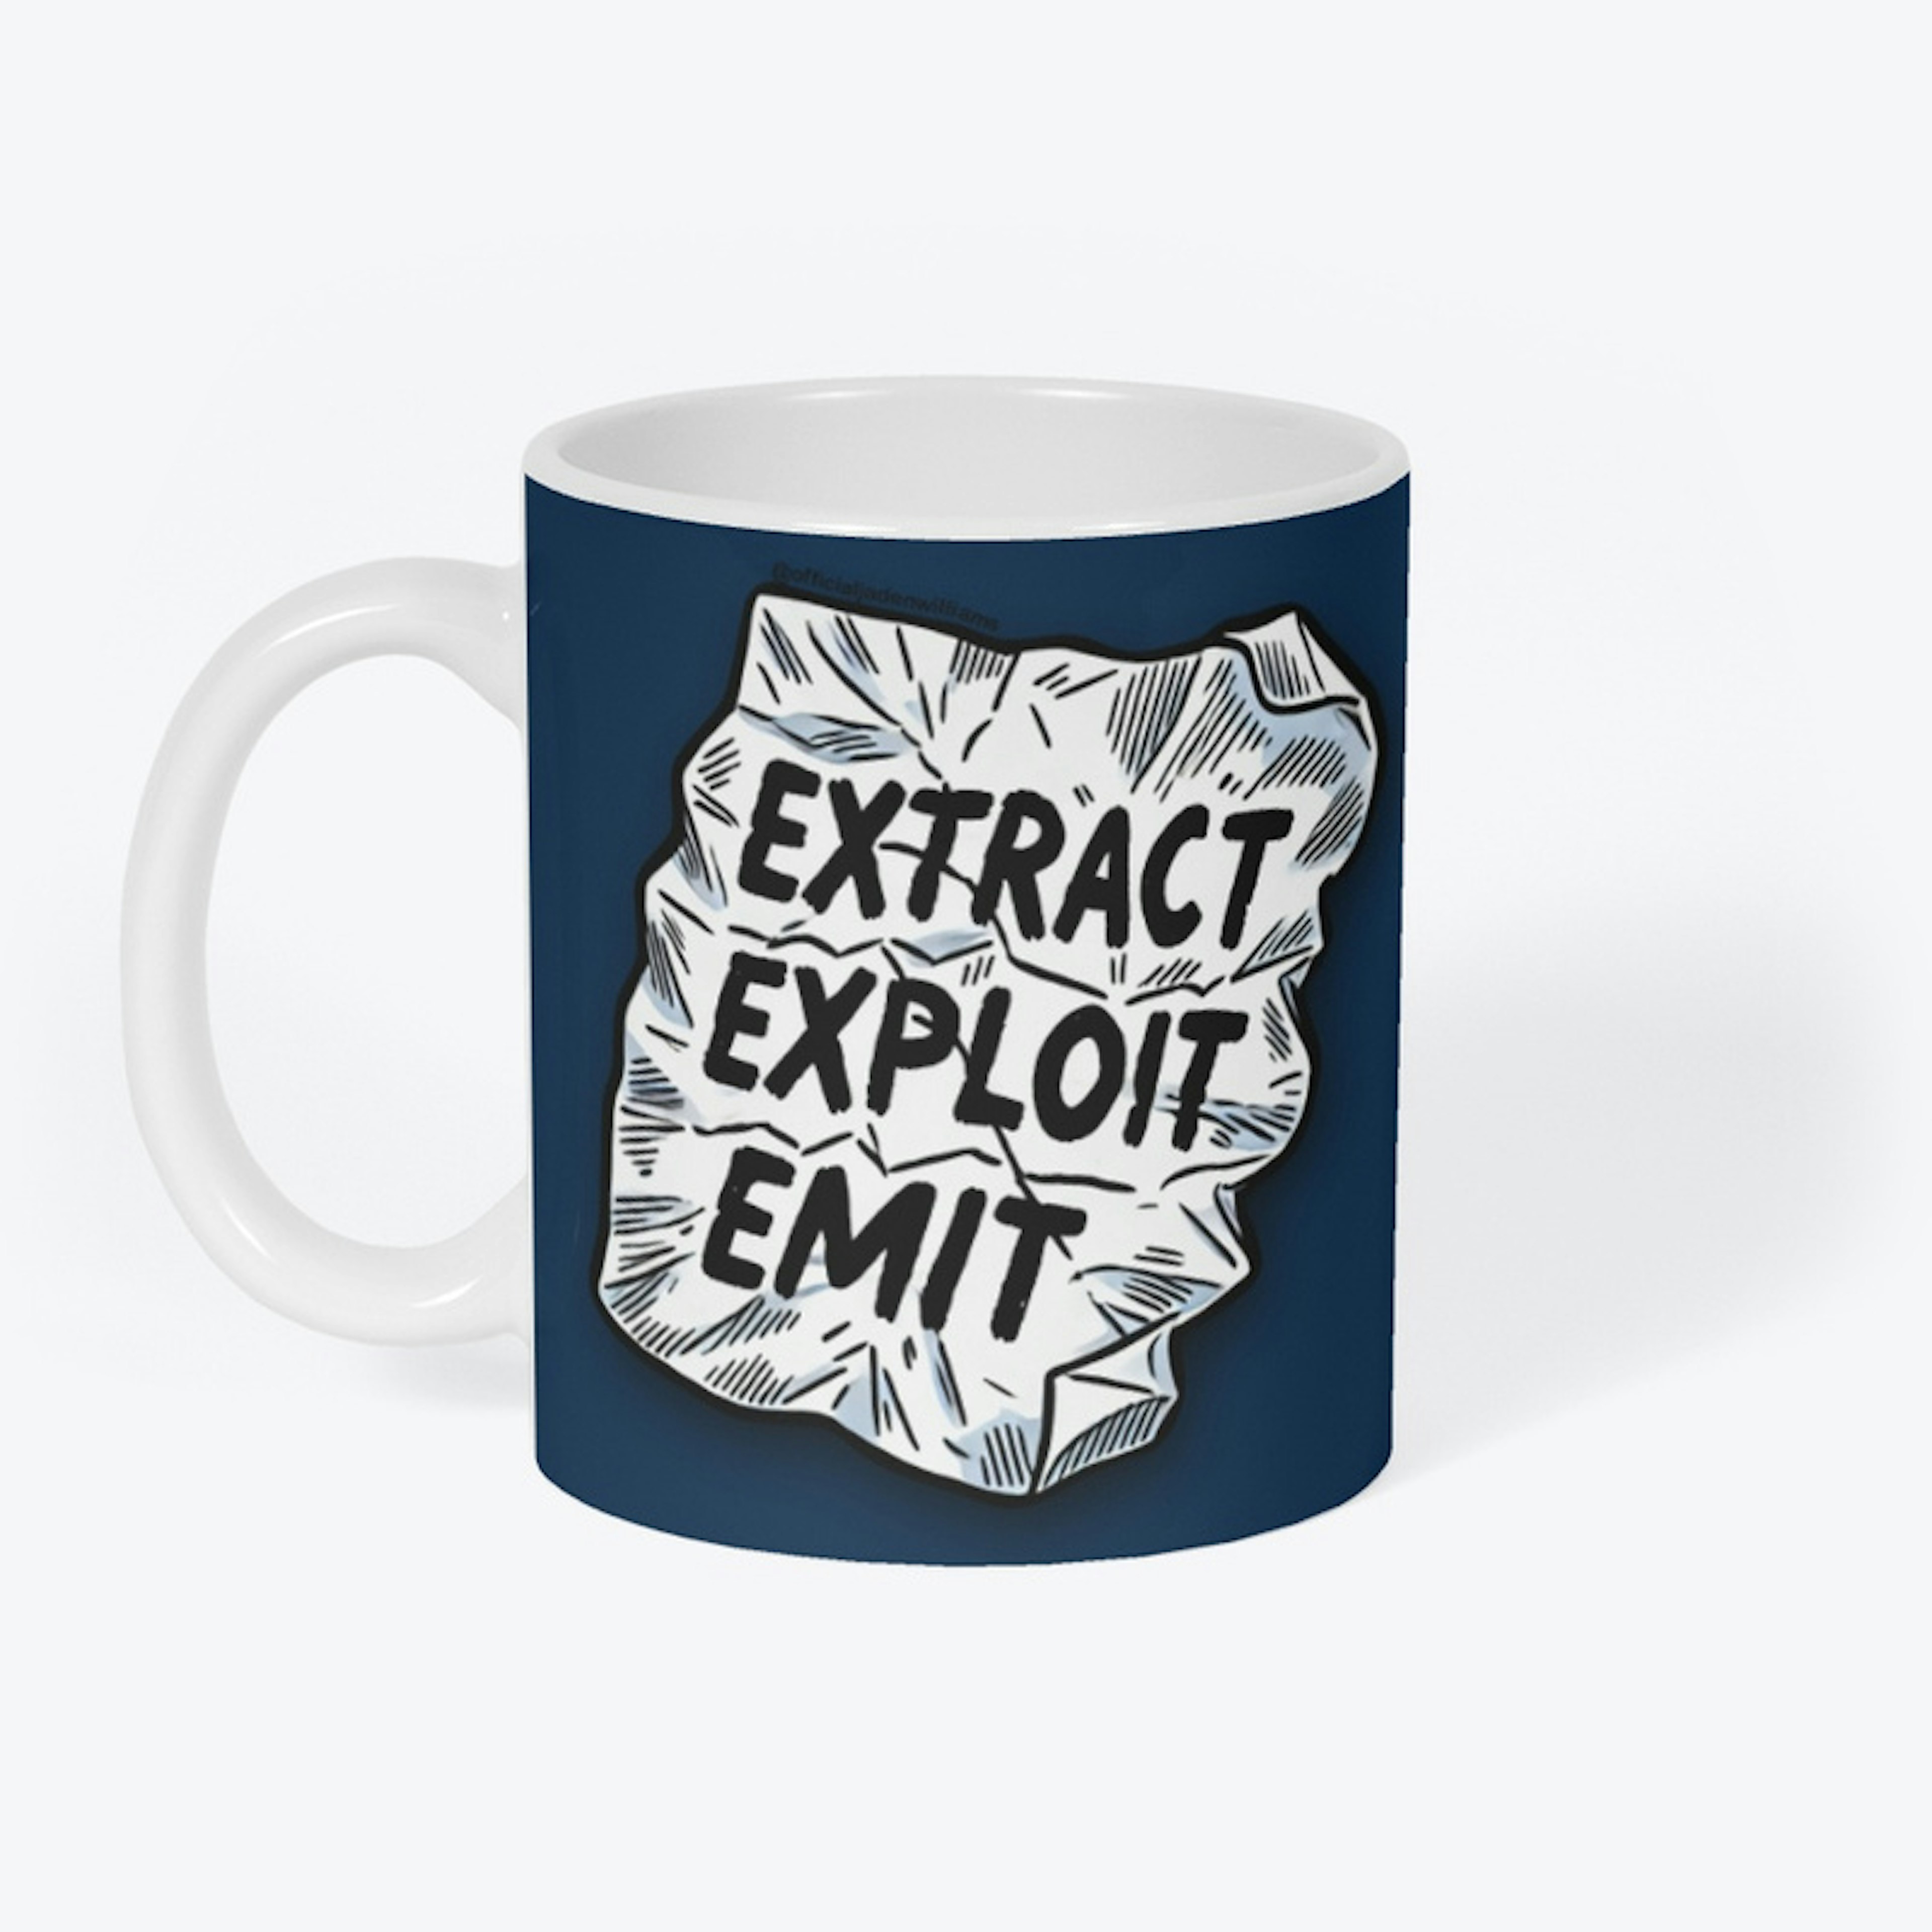 Extract, Exploit, Emit